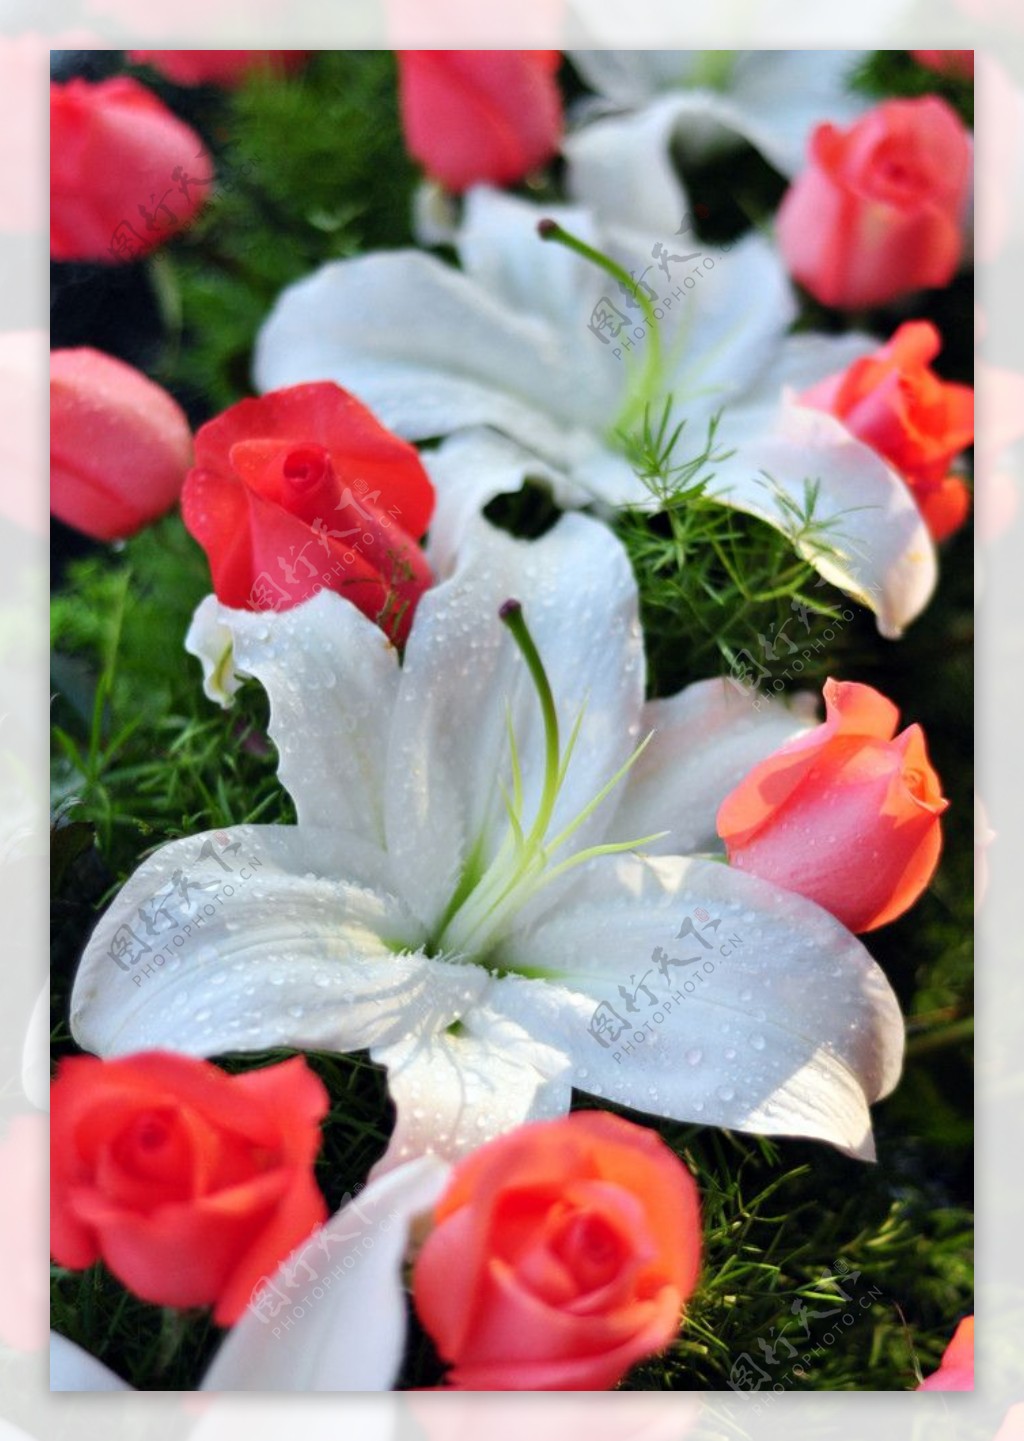 高清晰鲜花摄影系列-红玫瑰-白玫瑰-百合花-欧莱凯设计网